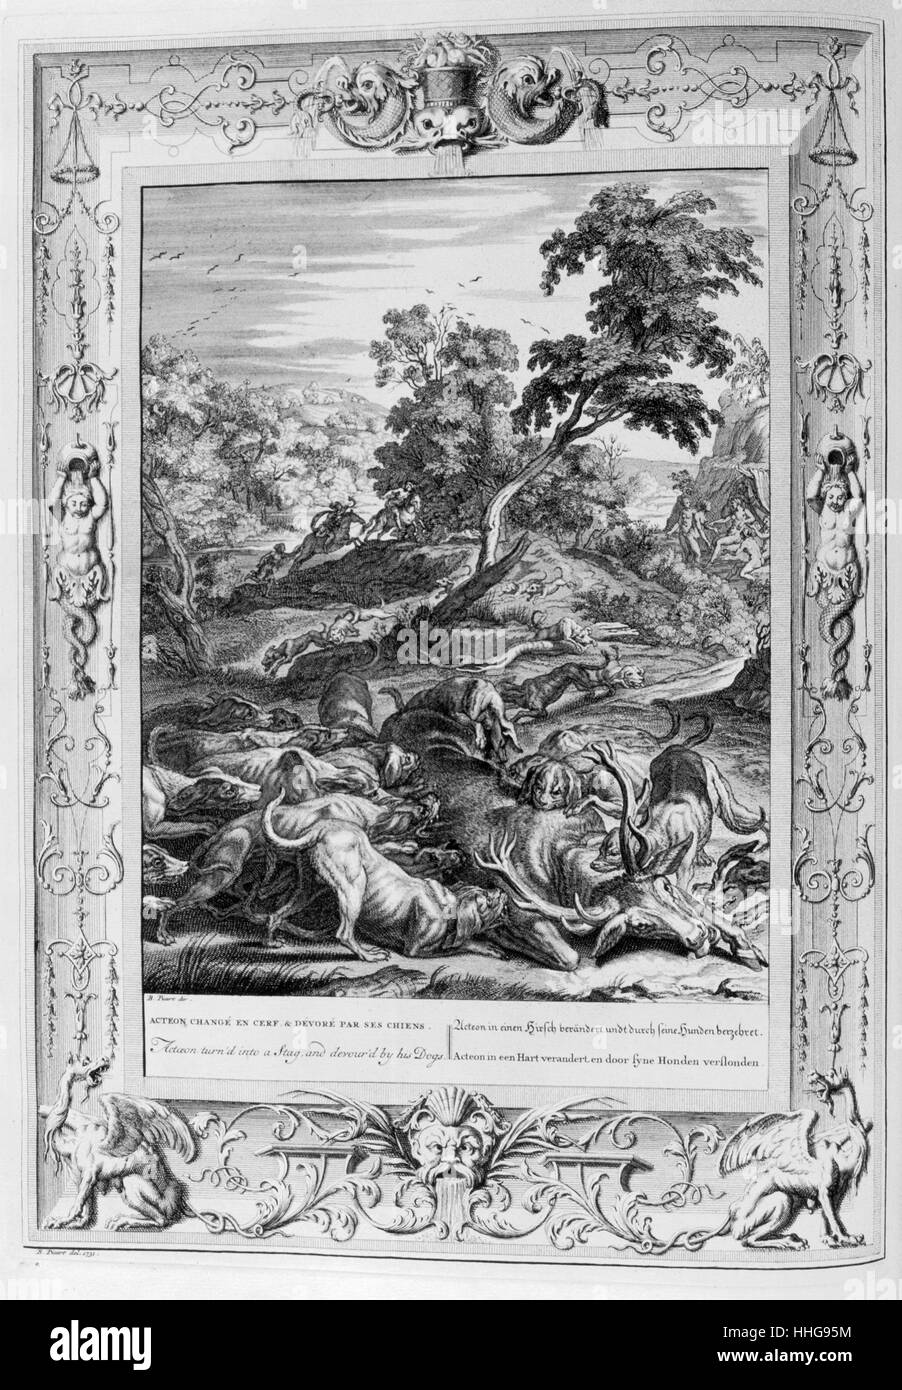 Acteon von Jagd Hunde verschlungen. Gravierte Illustration aus "Der Tempel der Musen", 1733. Stockfoto